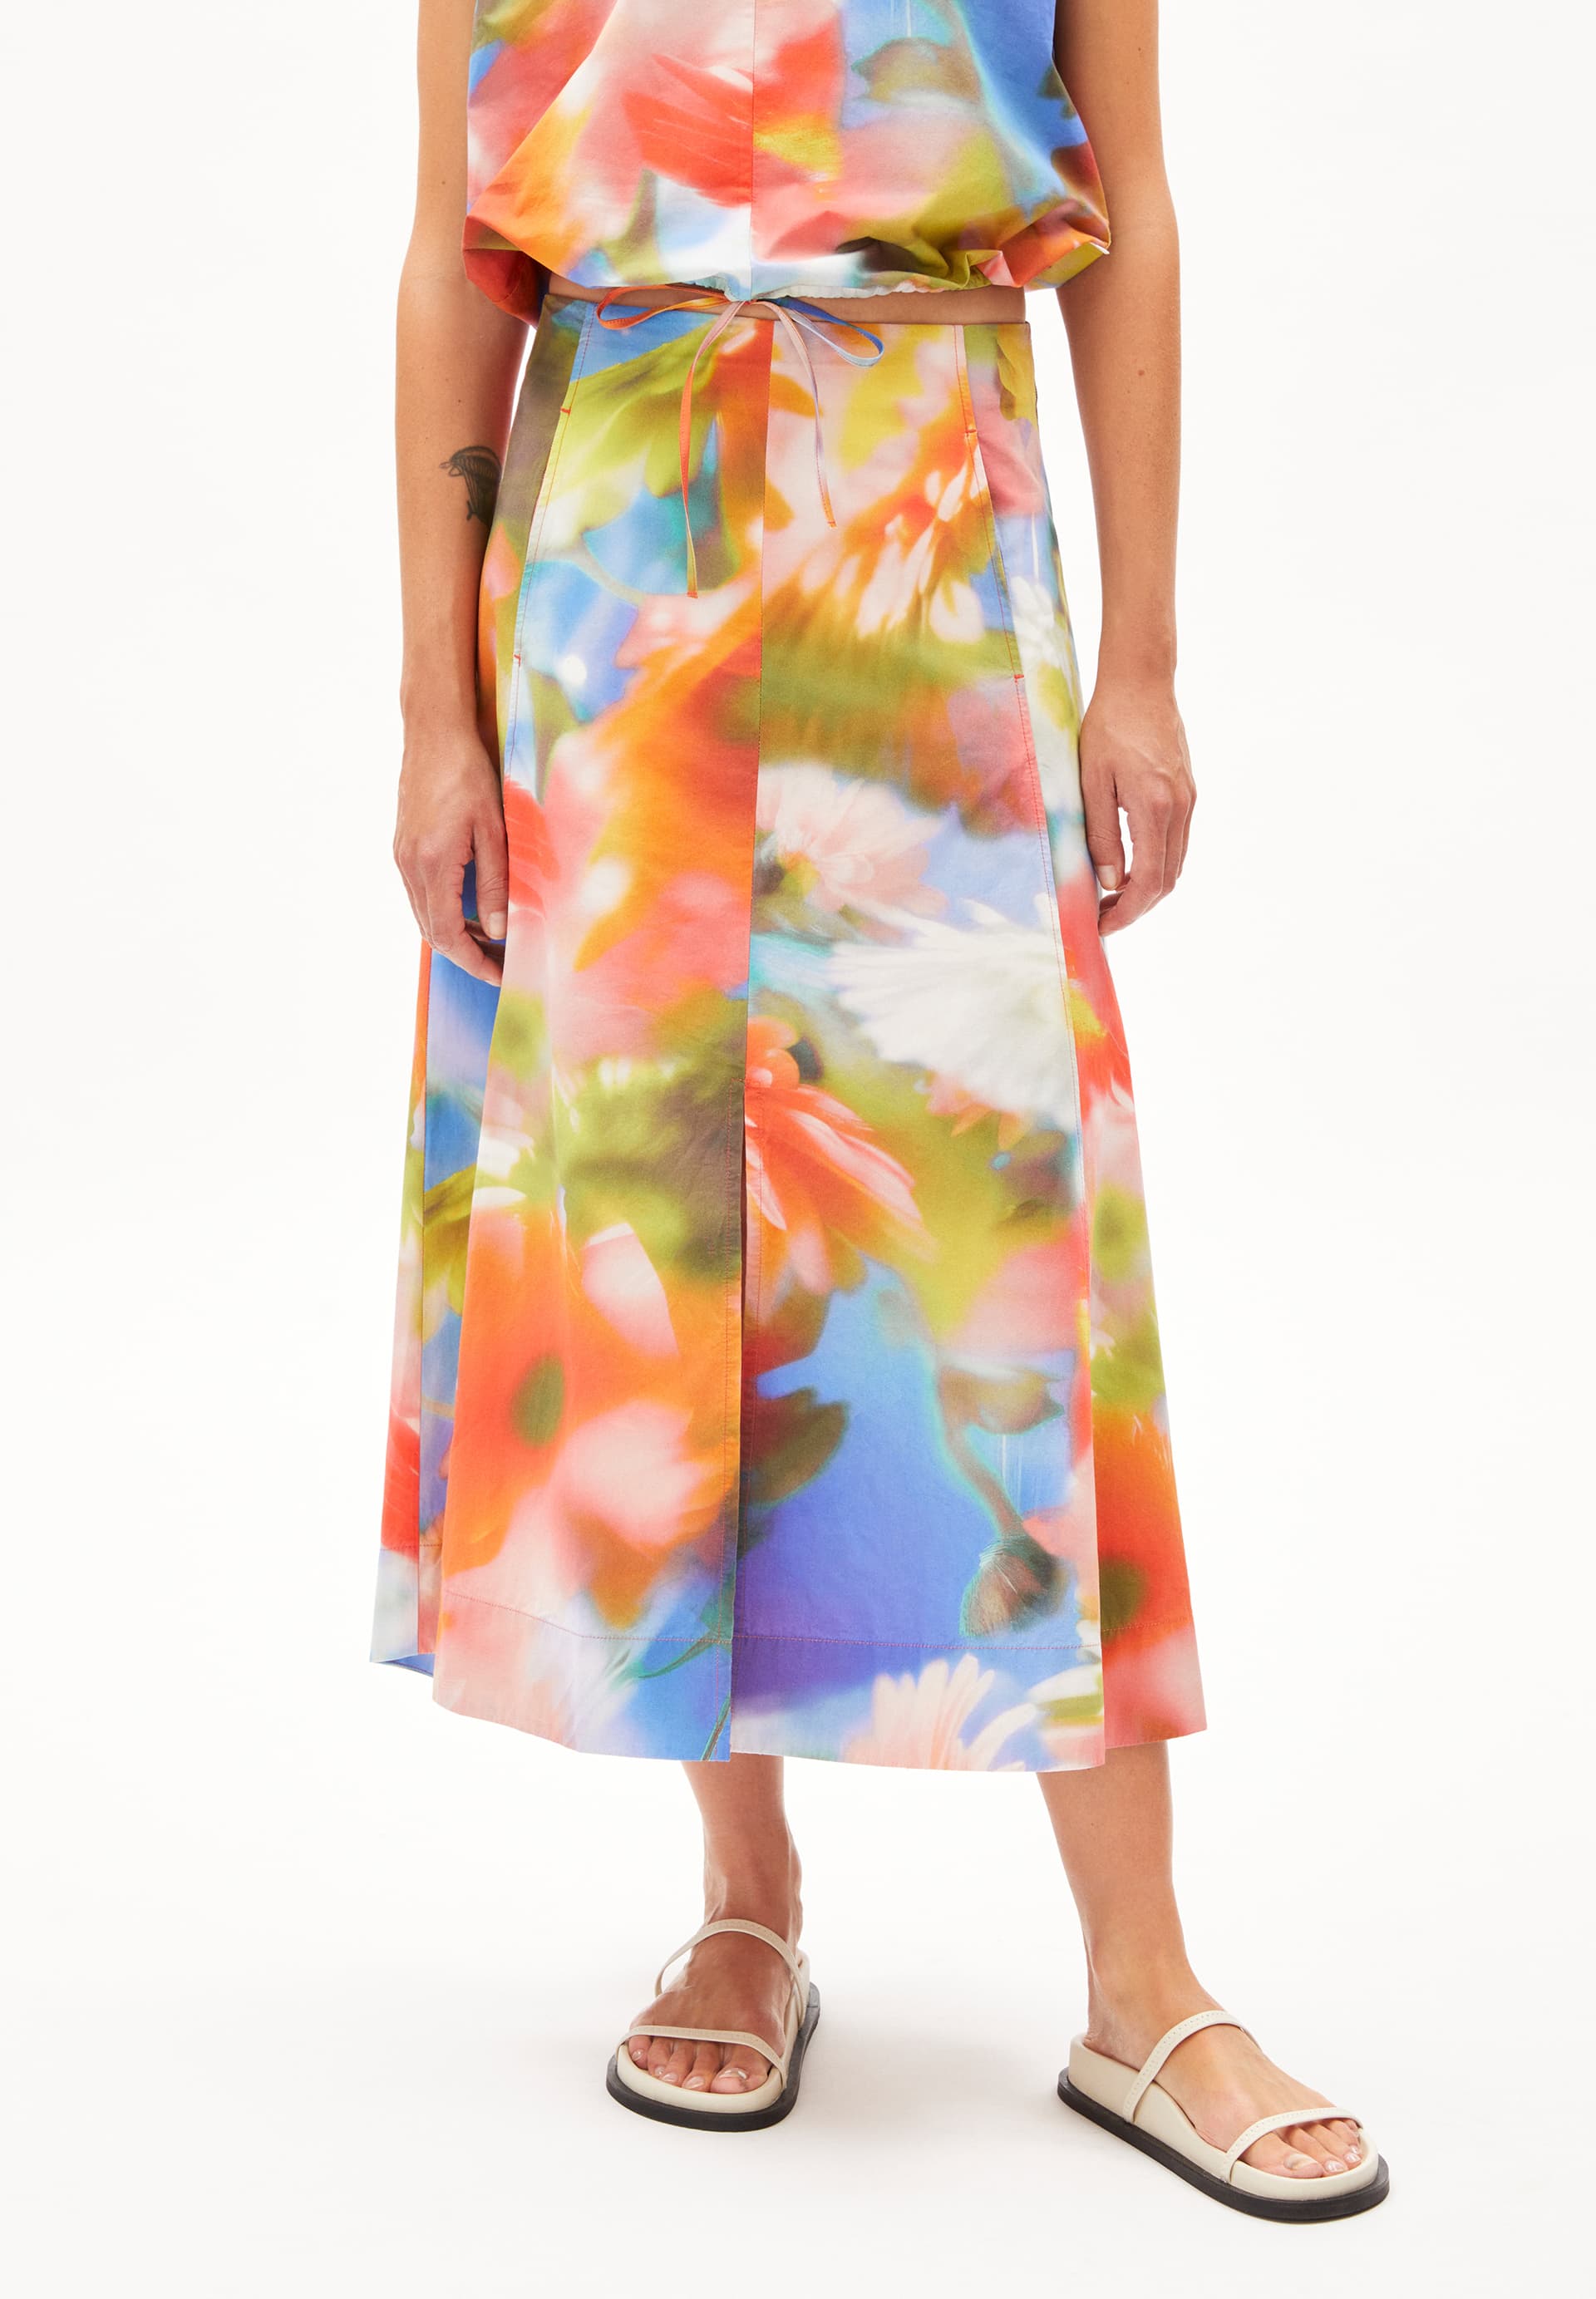 DELIAA NOSTALGIAA Woven Skirt Regular Fit made of Organic Cotton